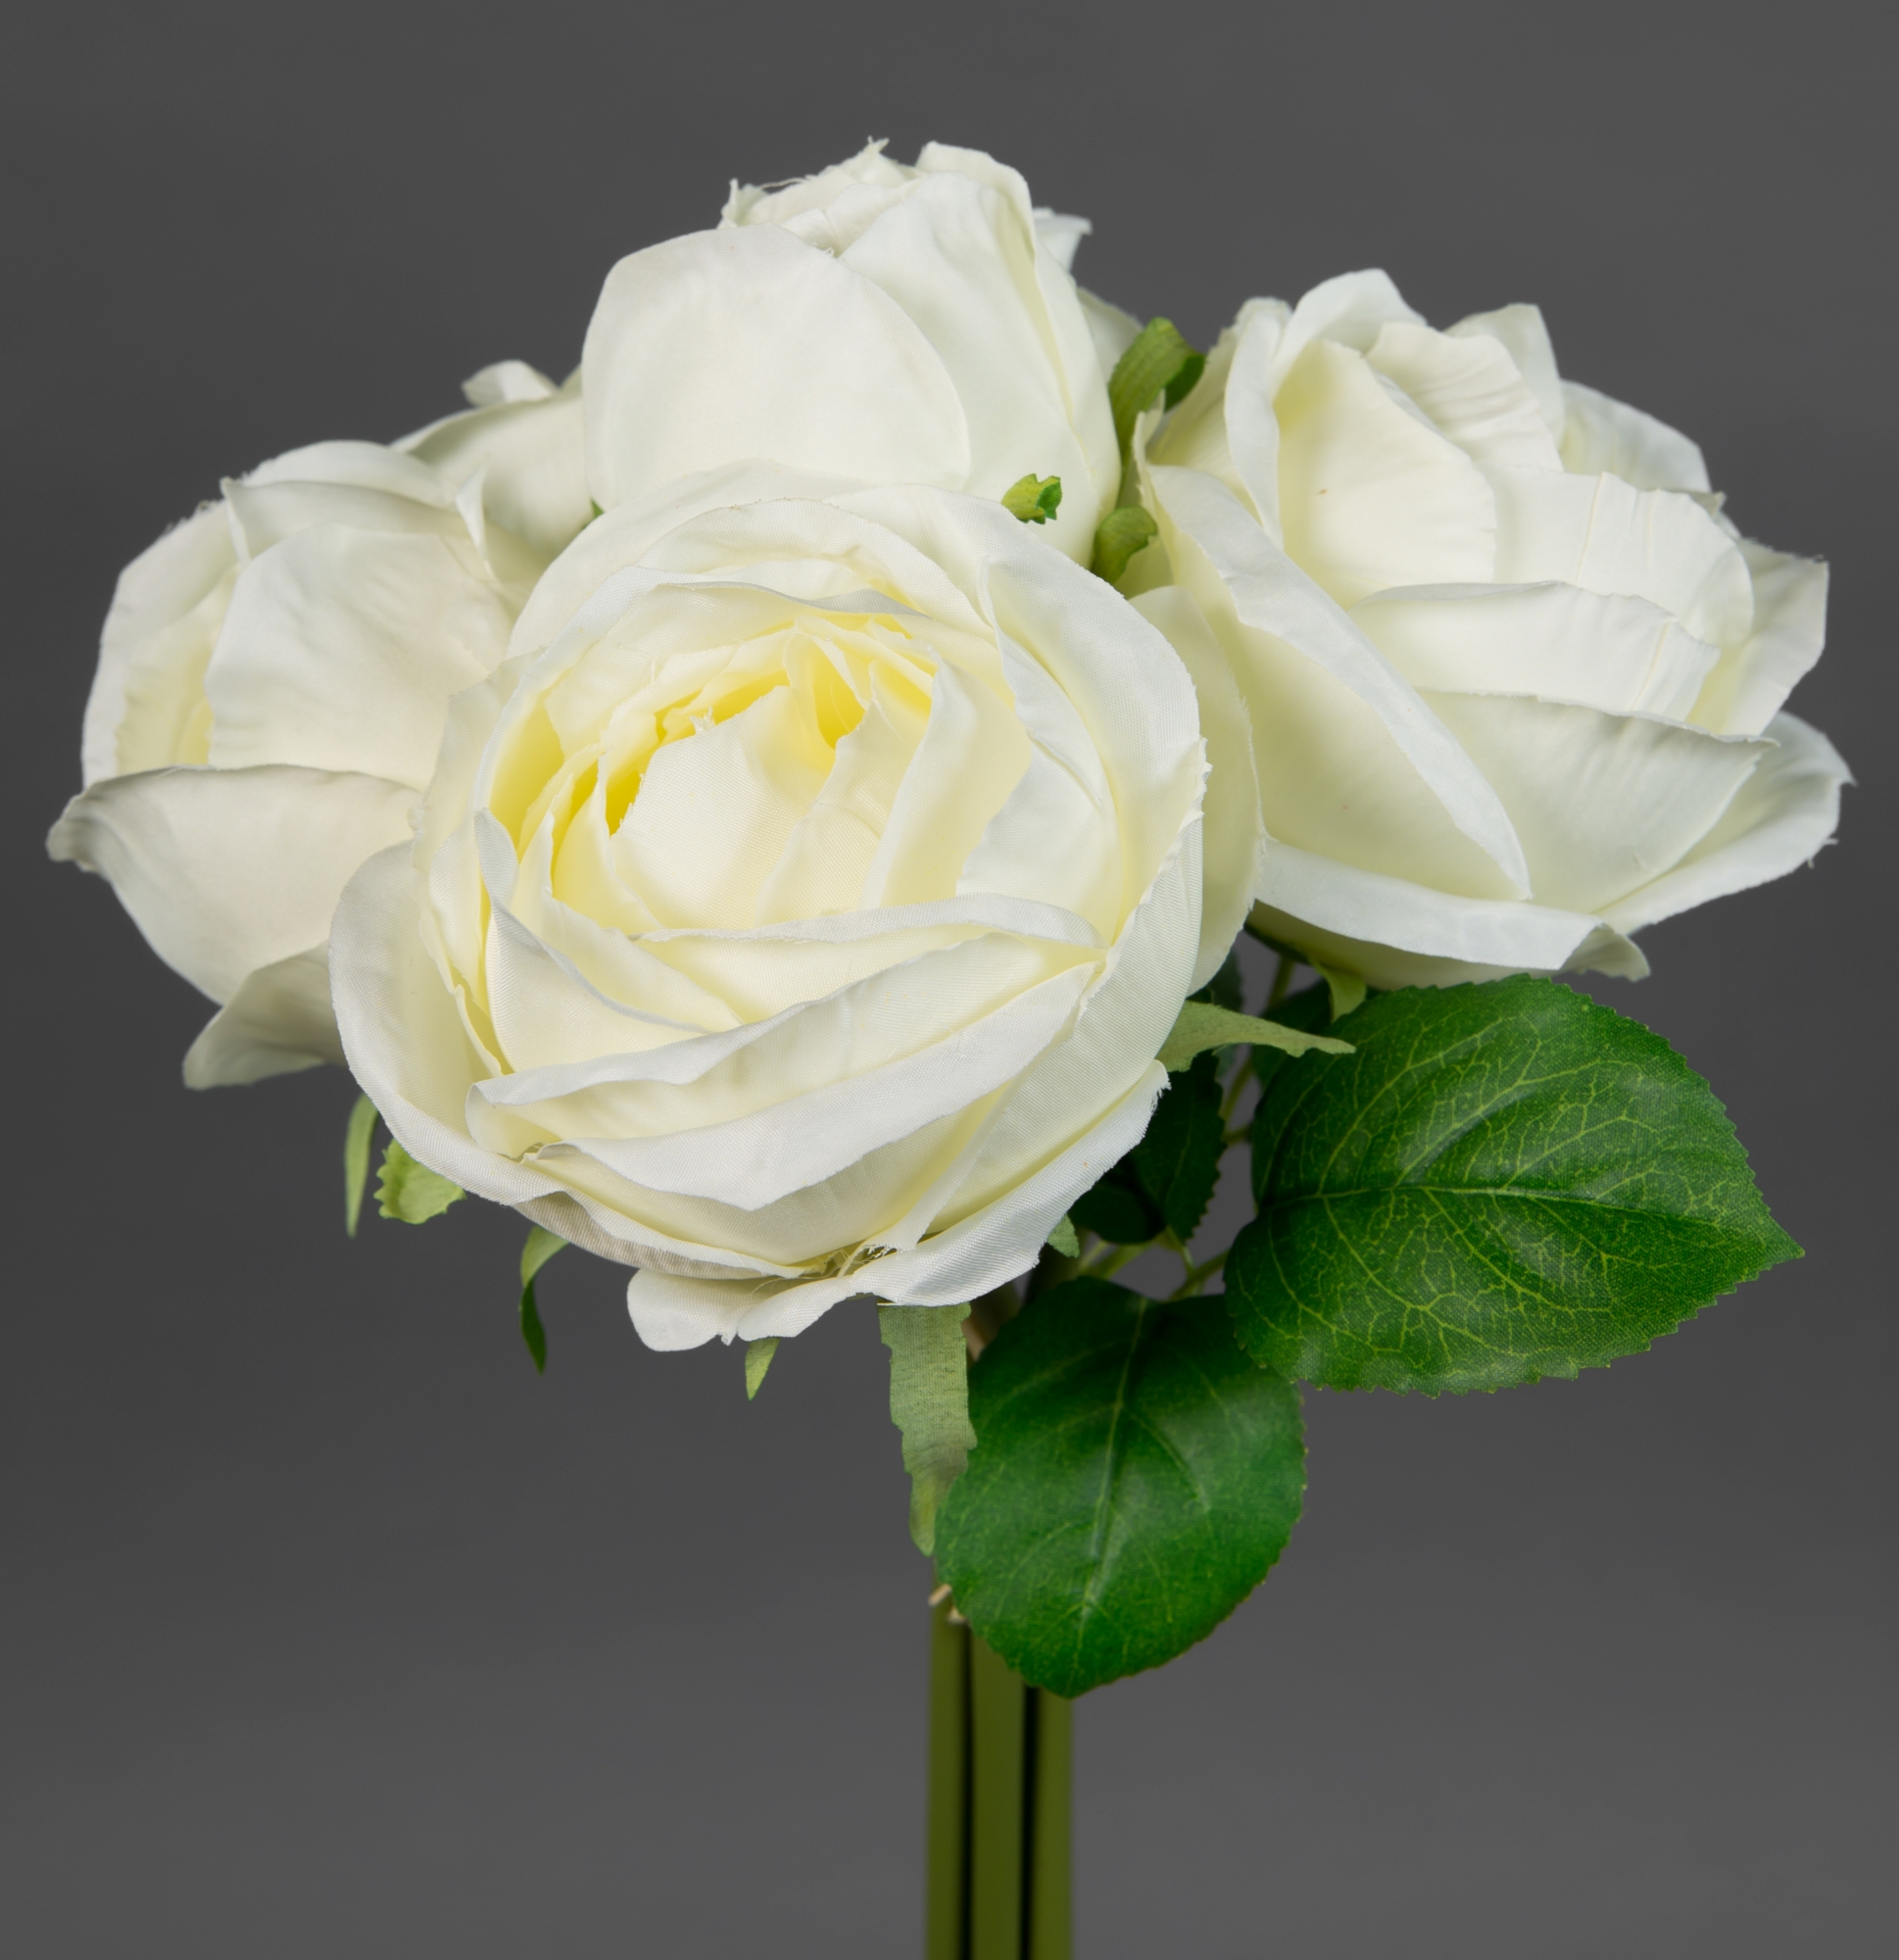 Rosenstrauß 28x20cm weiß-creme FT Kunstblumen künstliche Rosen Blumen  Strauß Blumenstrauß